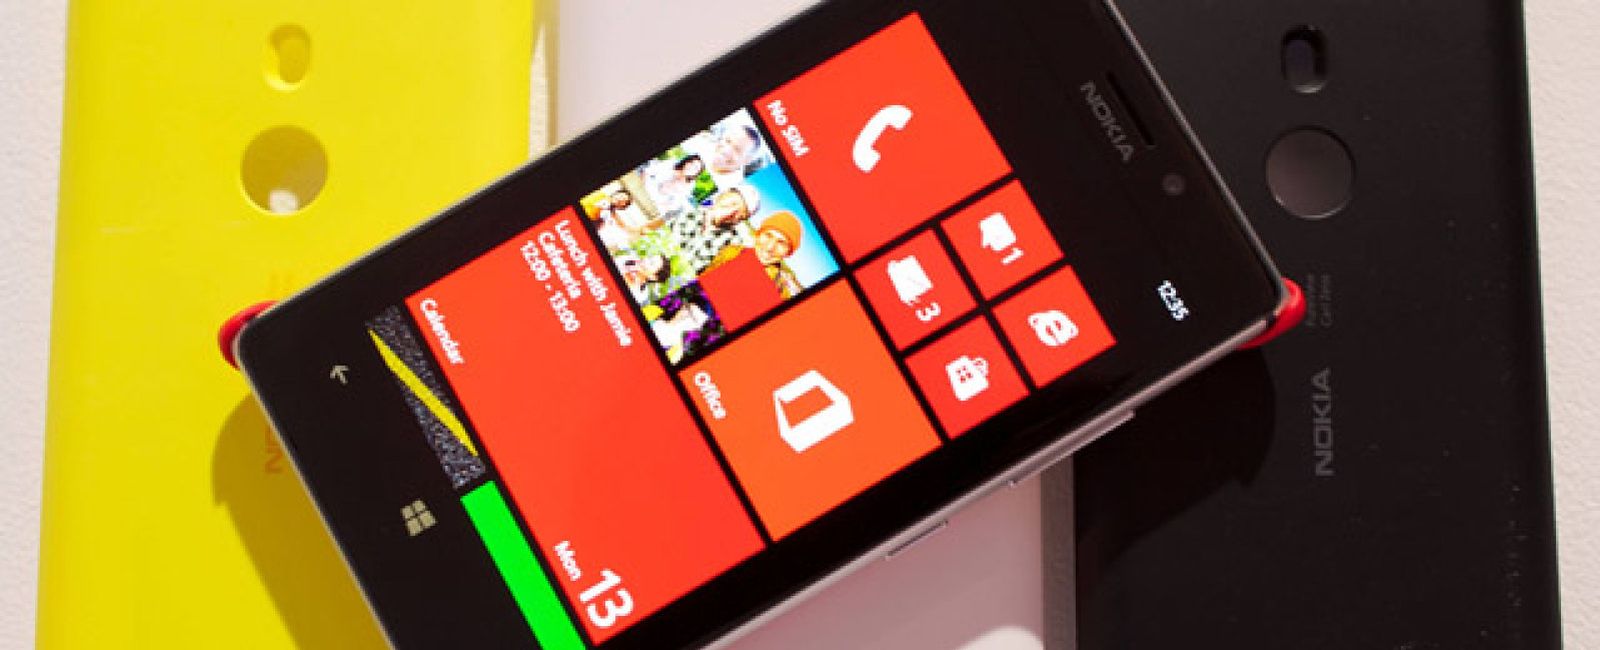 Foto: Nokia presenta el Lumia 925: metálico, más fino y más ligero